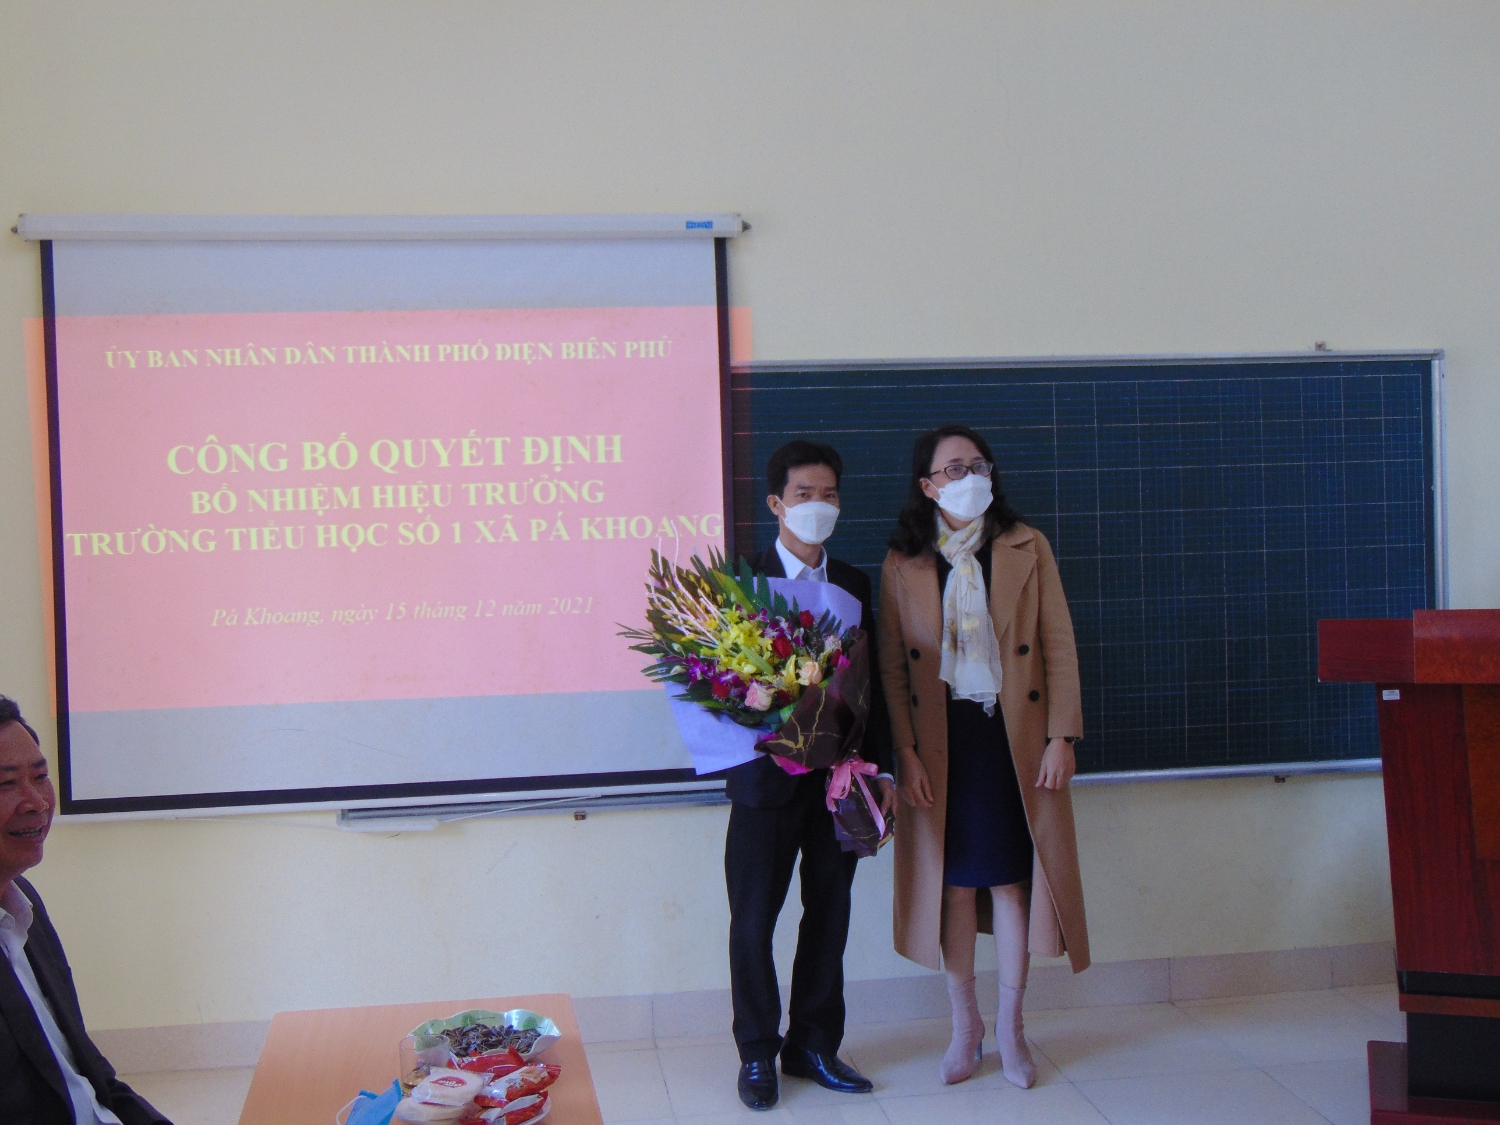 Đồng chí Nguyễn Thị Hồng Ngọc - Phó trưởng phòng GD&ĐT Thành phố Điện Biên Phủ, lên tặng hoa chúc mừng đồng chí Phùng Hồng Nam